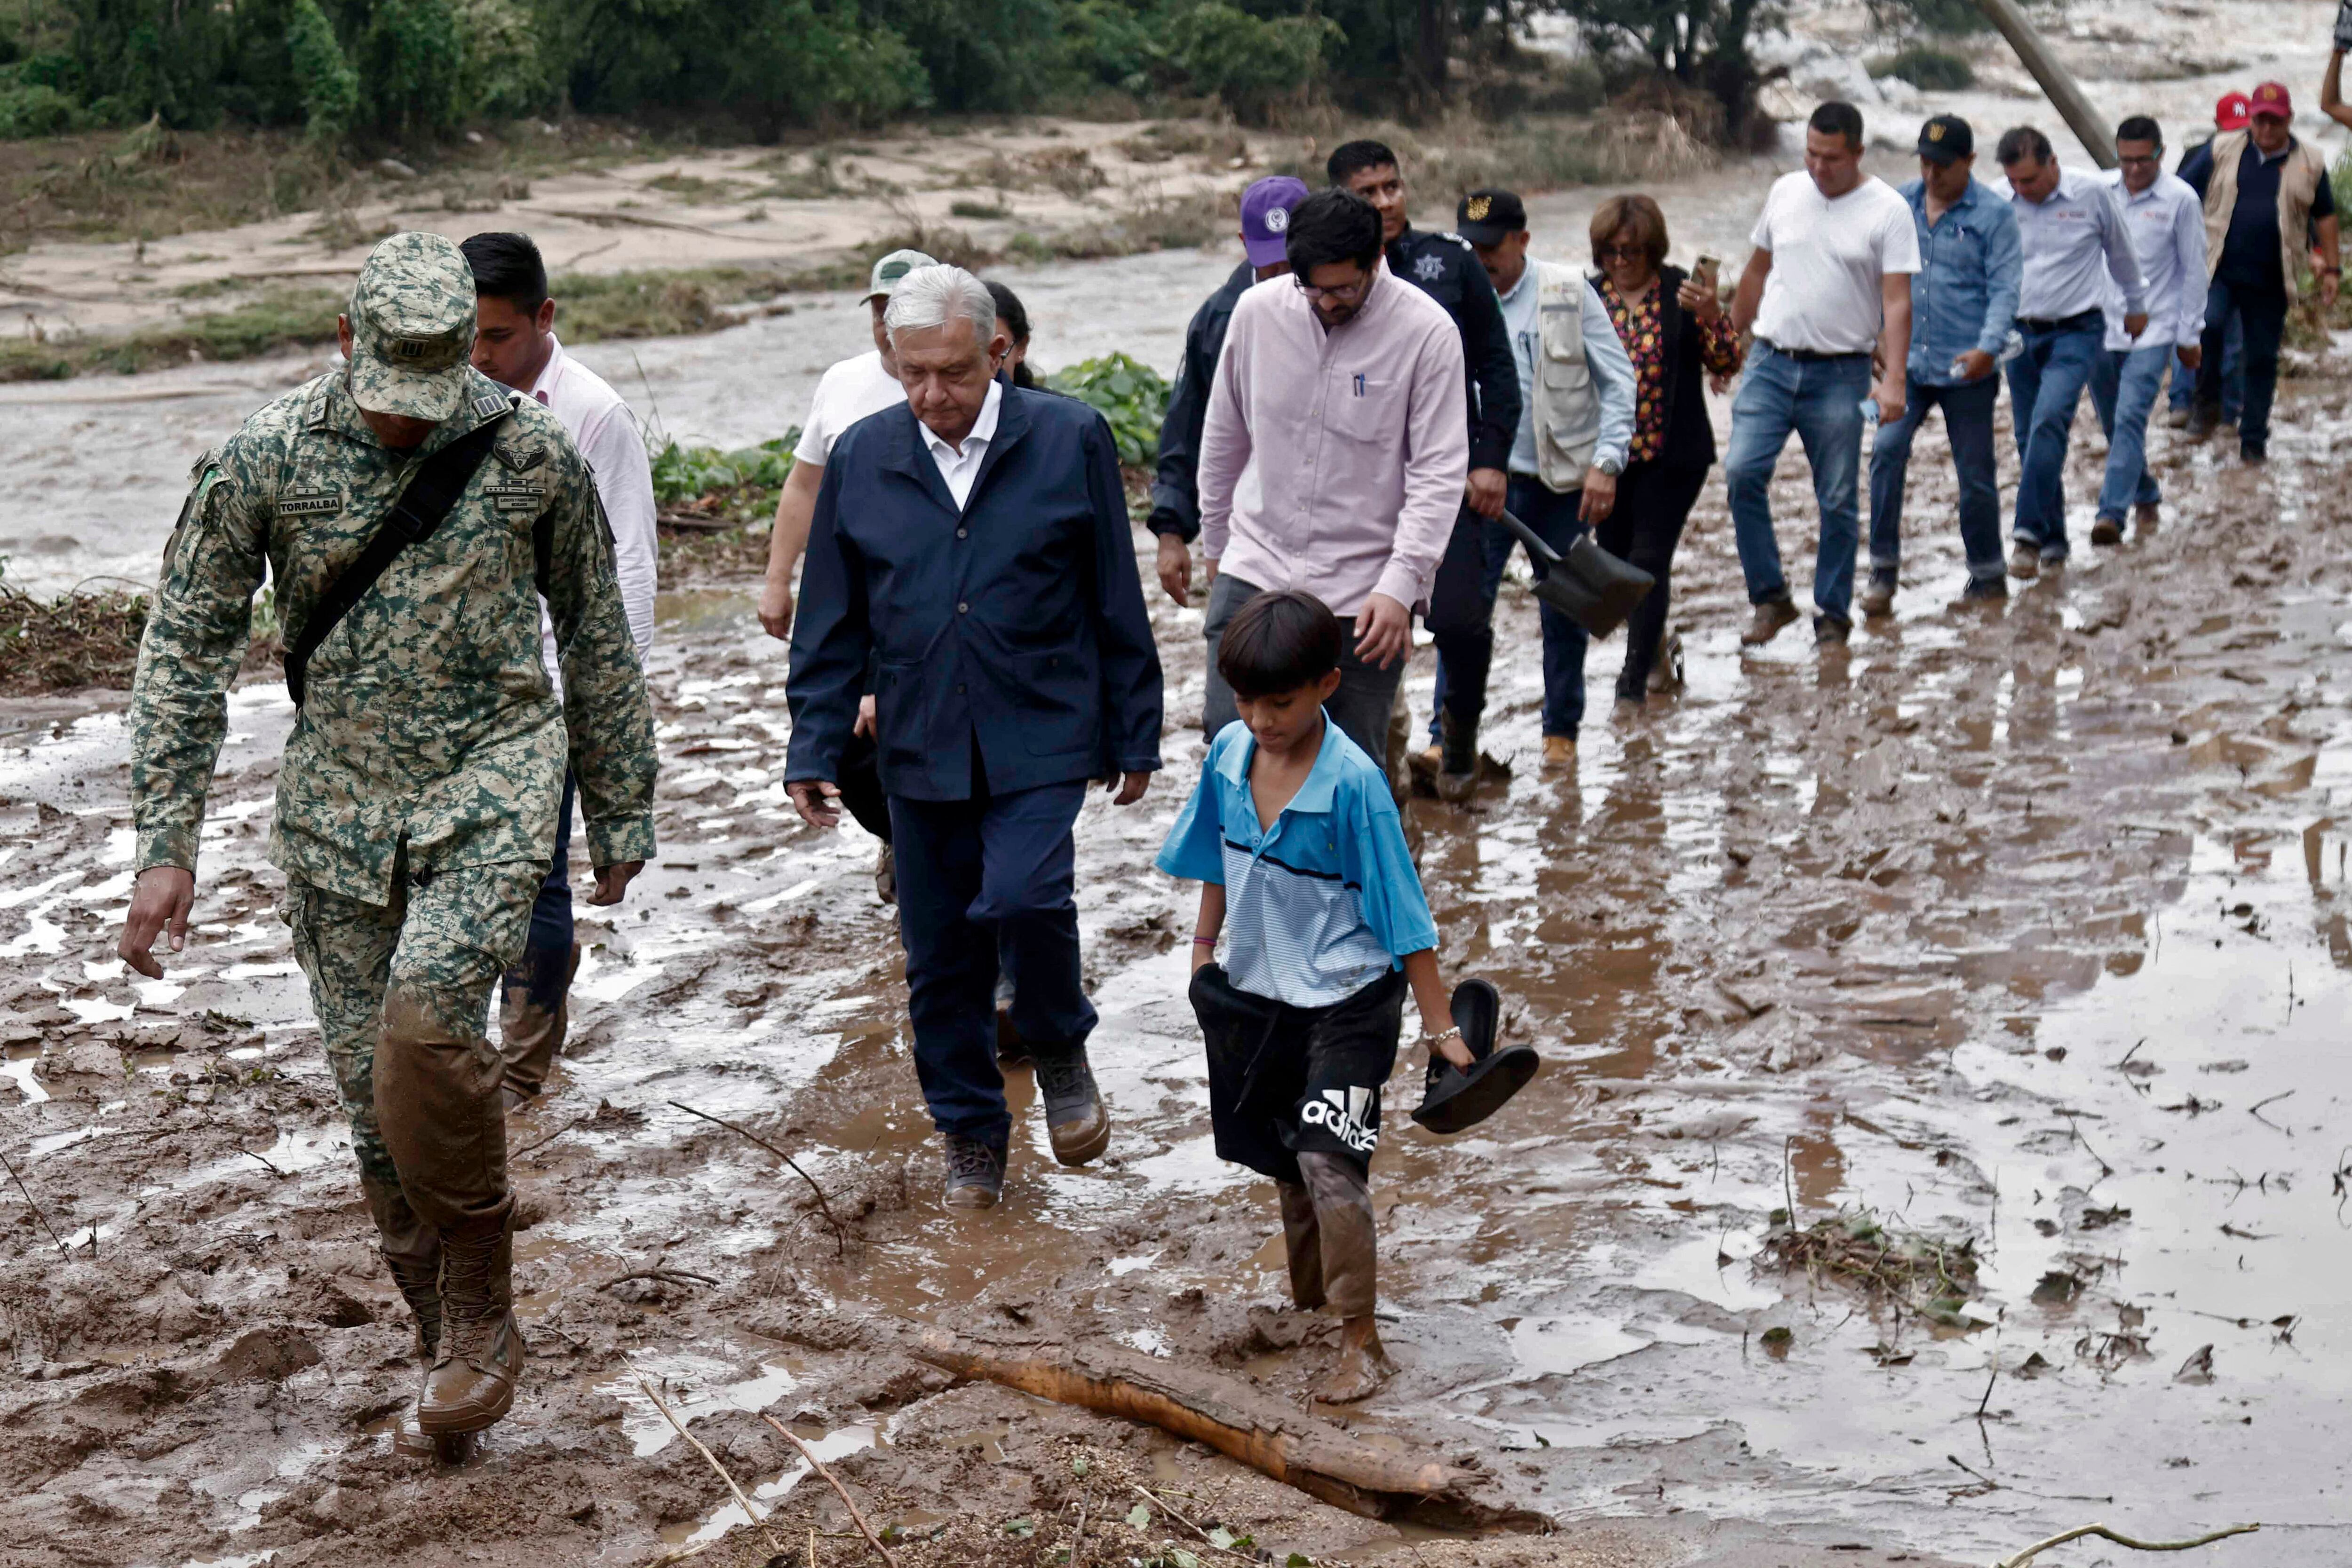 El presidente mexicano, Andrés Manuel López Obrador, y miembros de su gabinete caminan sobre el barro mientras visitan la comunidad El Kilometro 42, cerca de Acapulco. (Foto de RODRIGO OROPEZA/AFP).